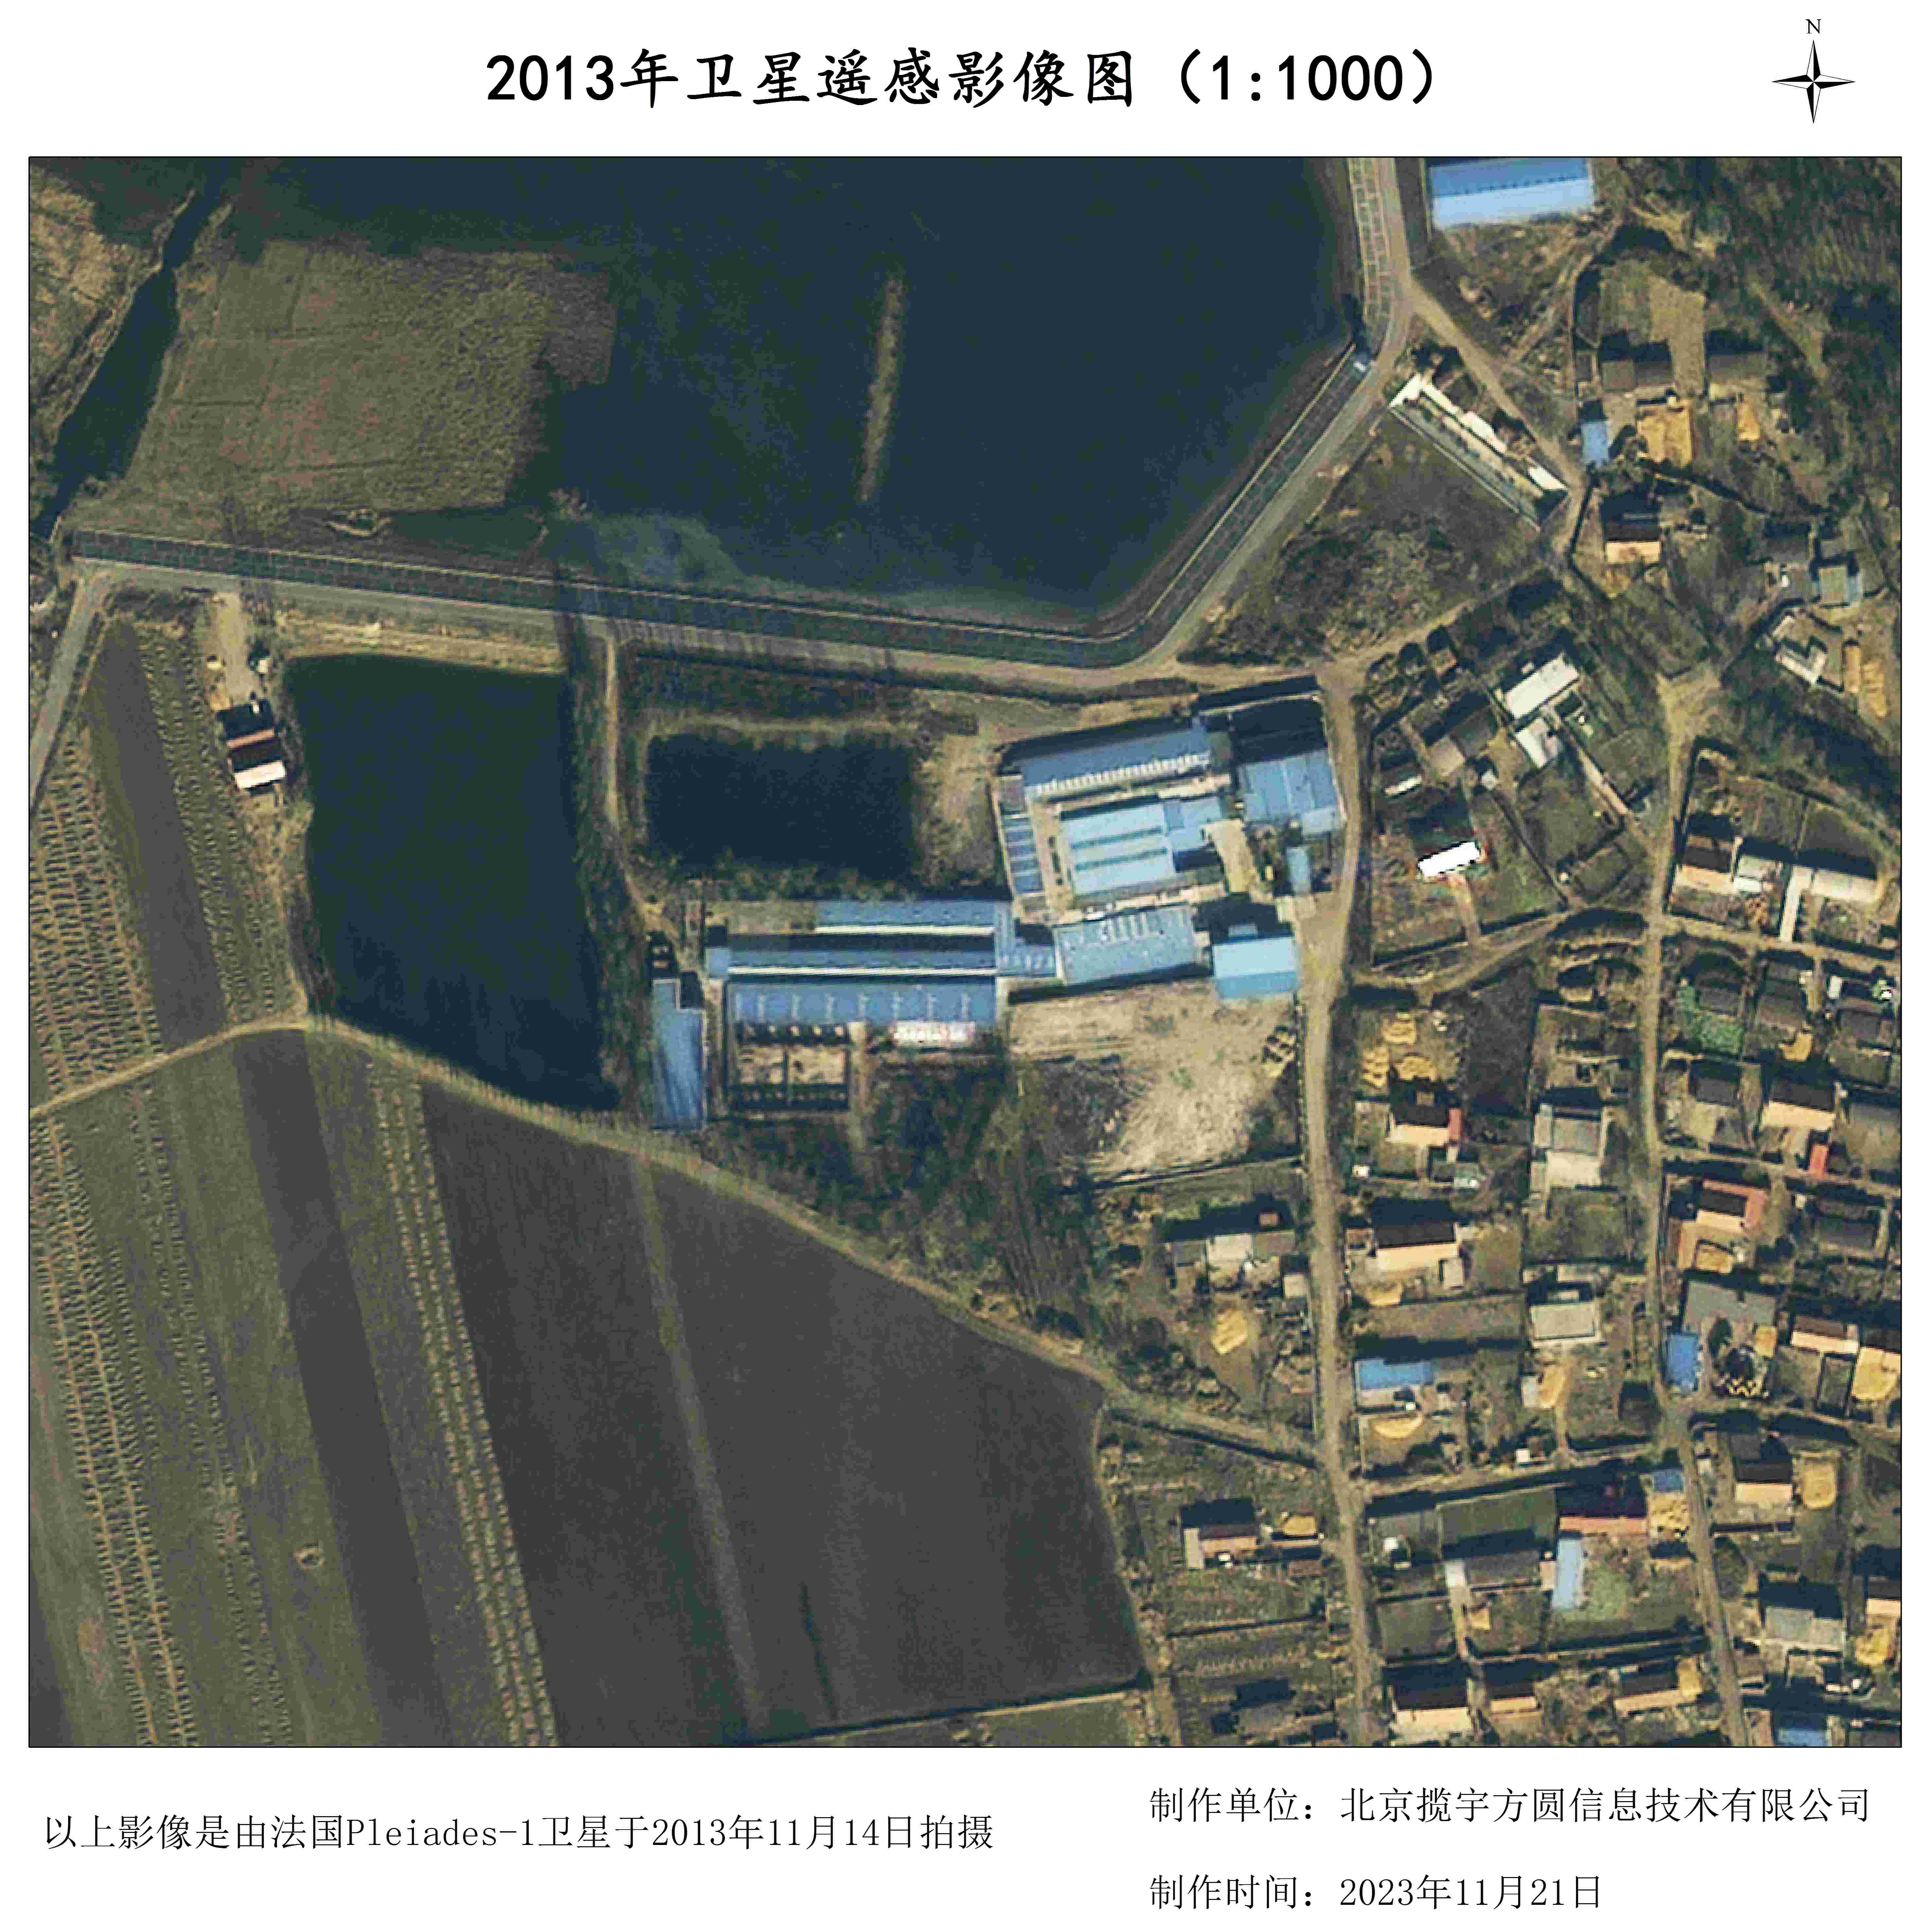 長時間序列衛星影像圖：同一個地方0.5米分辨率2013年PLEIADES衛星圖